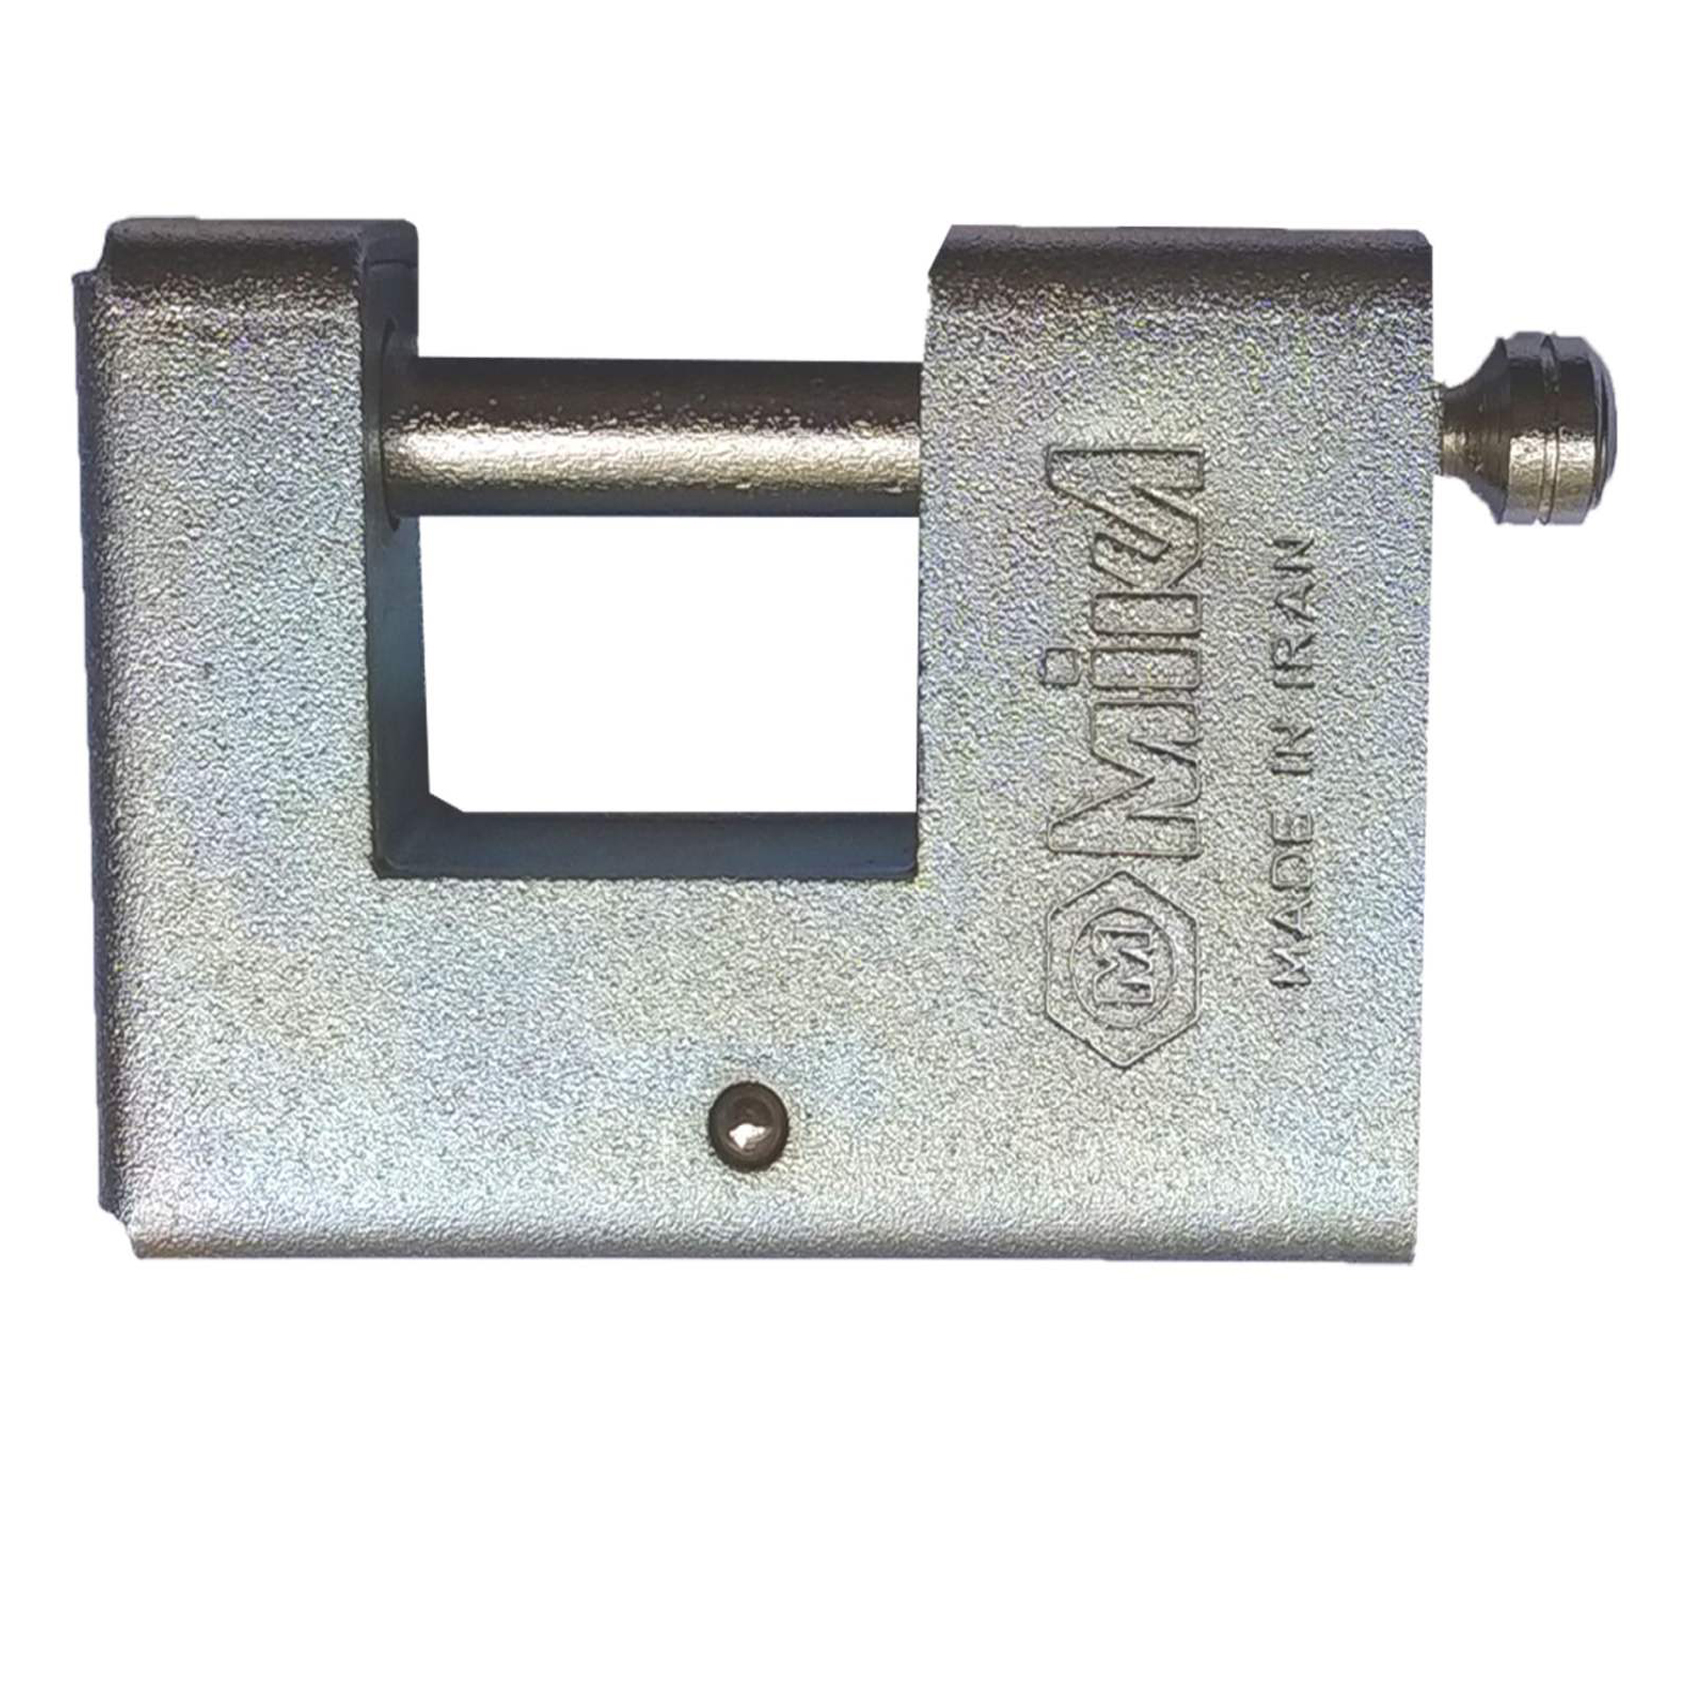 قفل کتابی ابزار میکا مدل RP-AC93